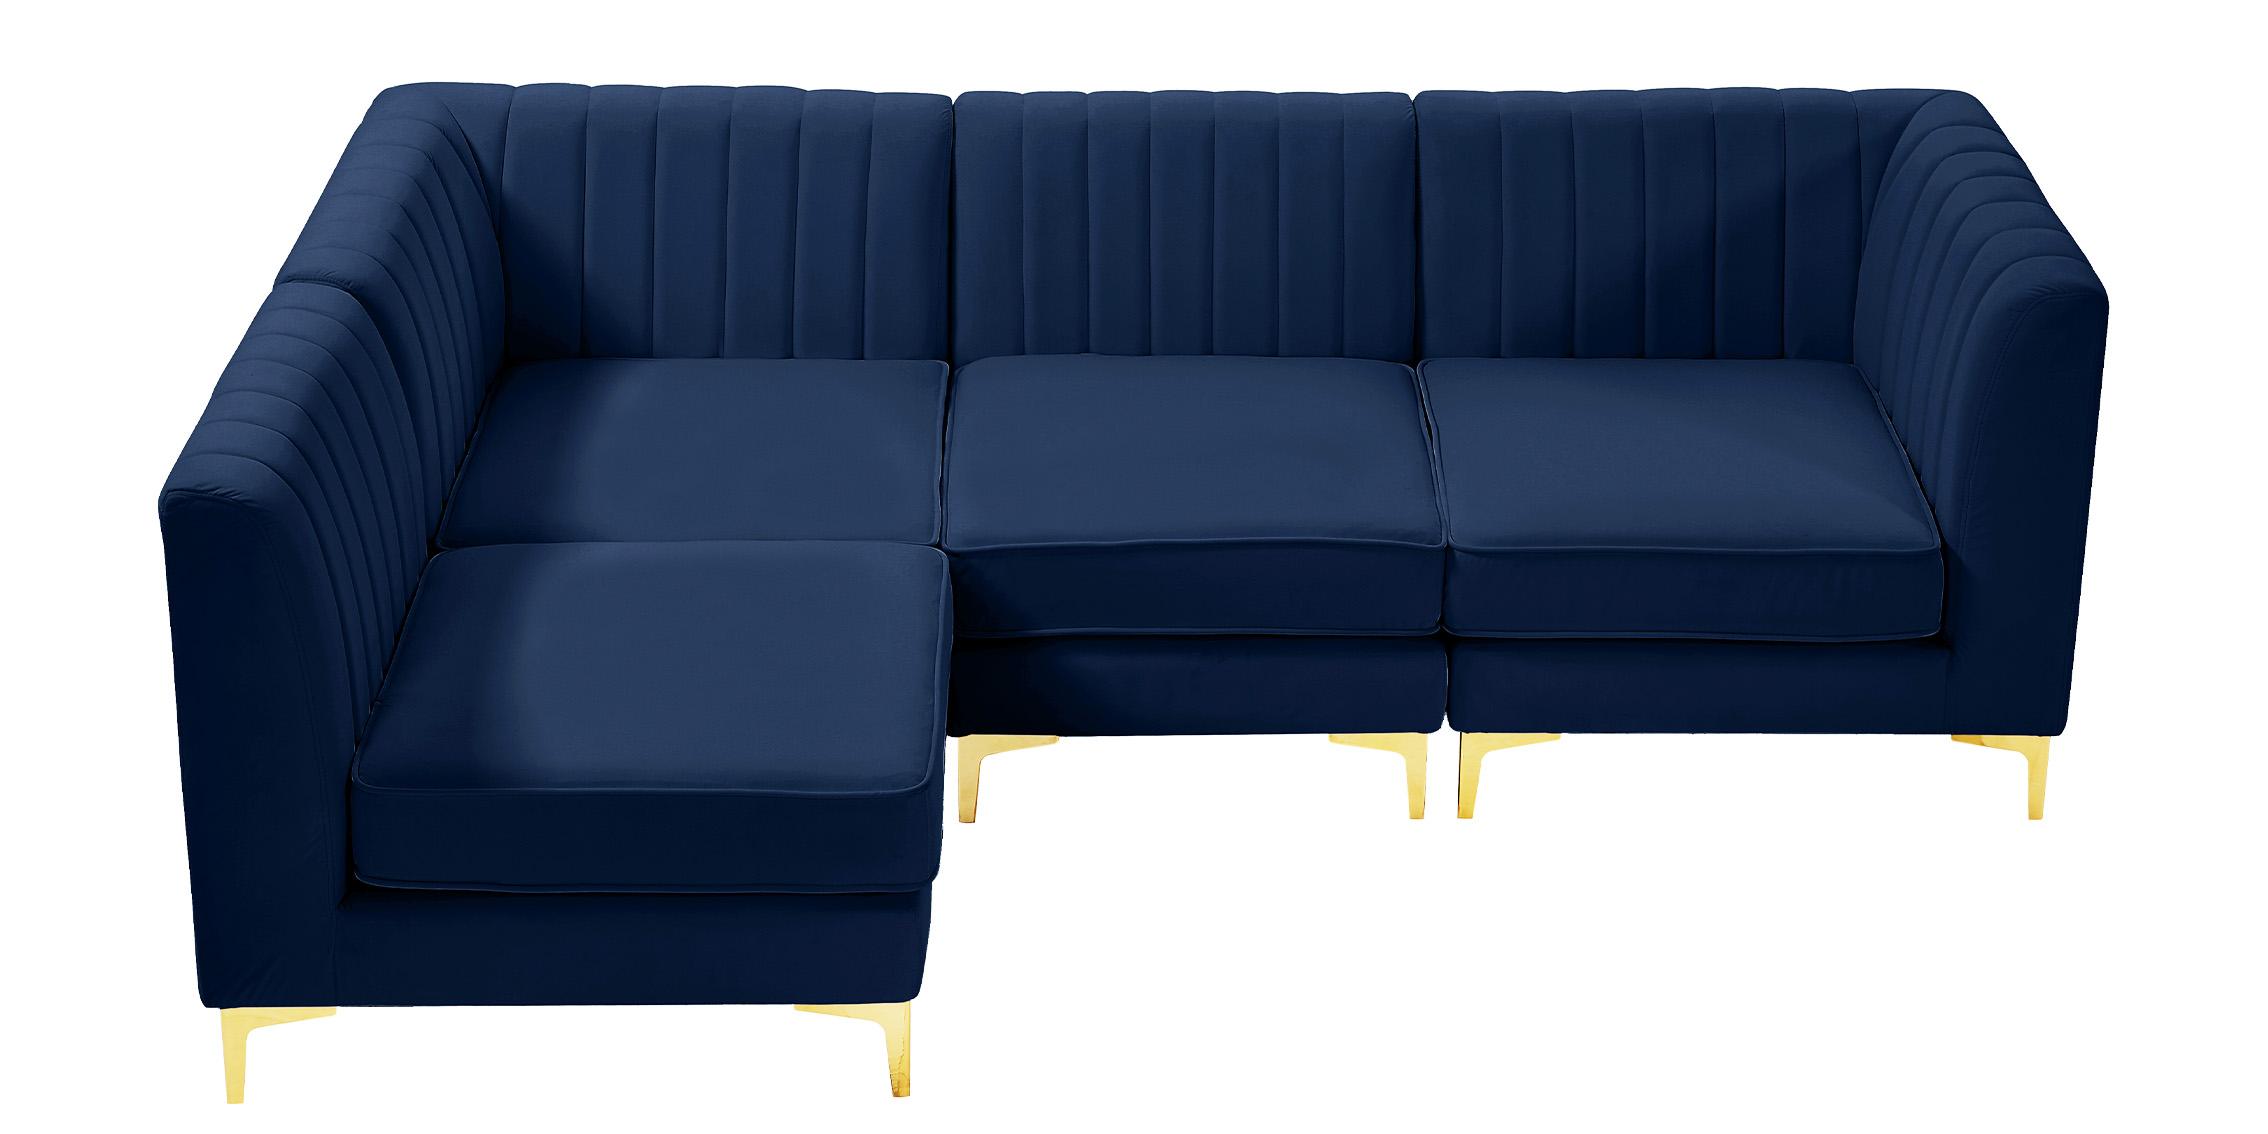 

    
604Navy-Sec4A Meridian Furniture Modular Sectional Sofa
